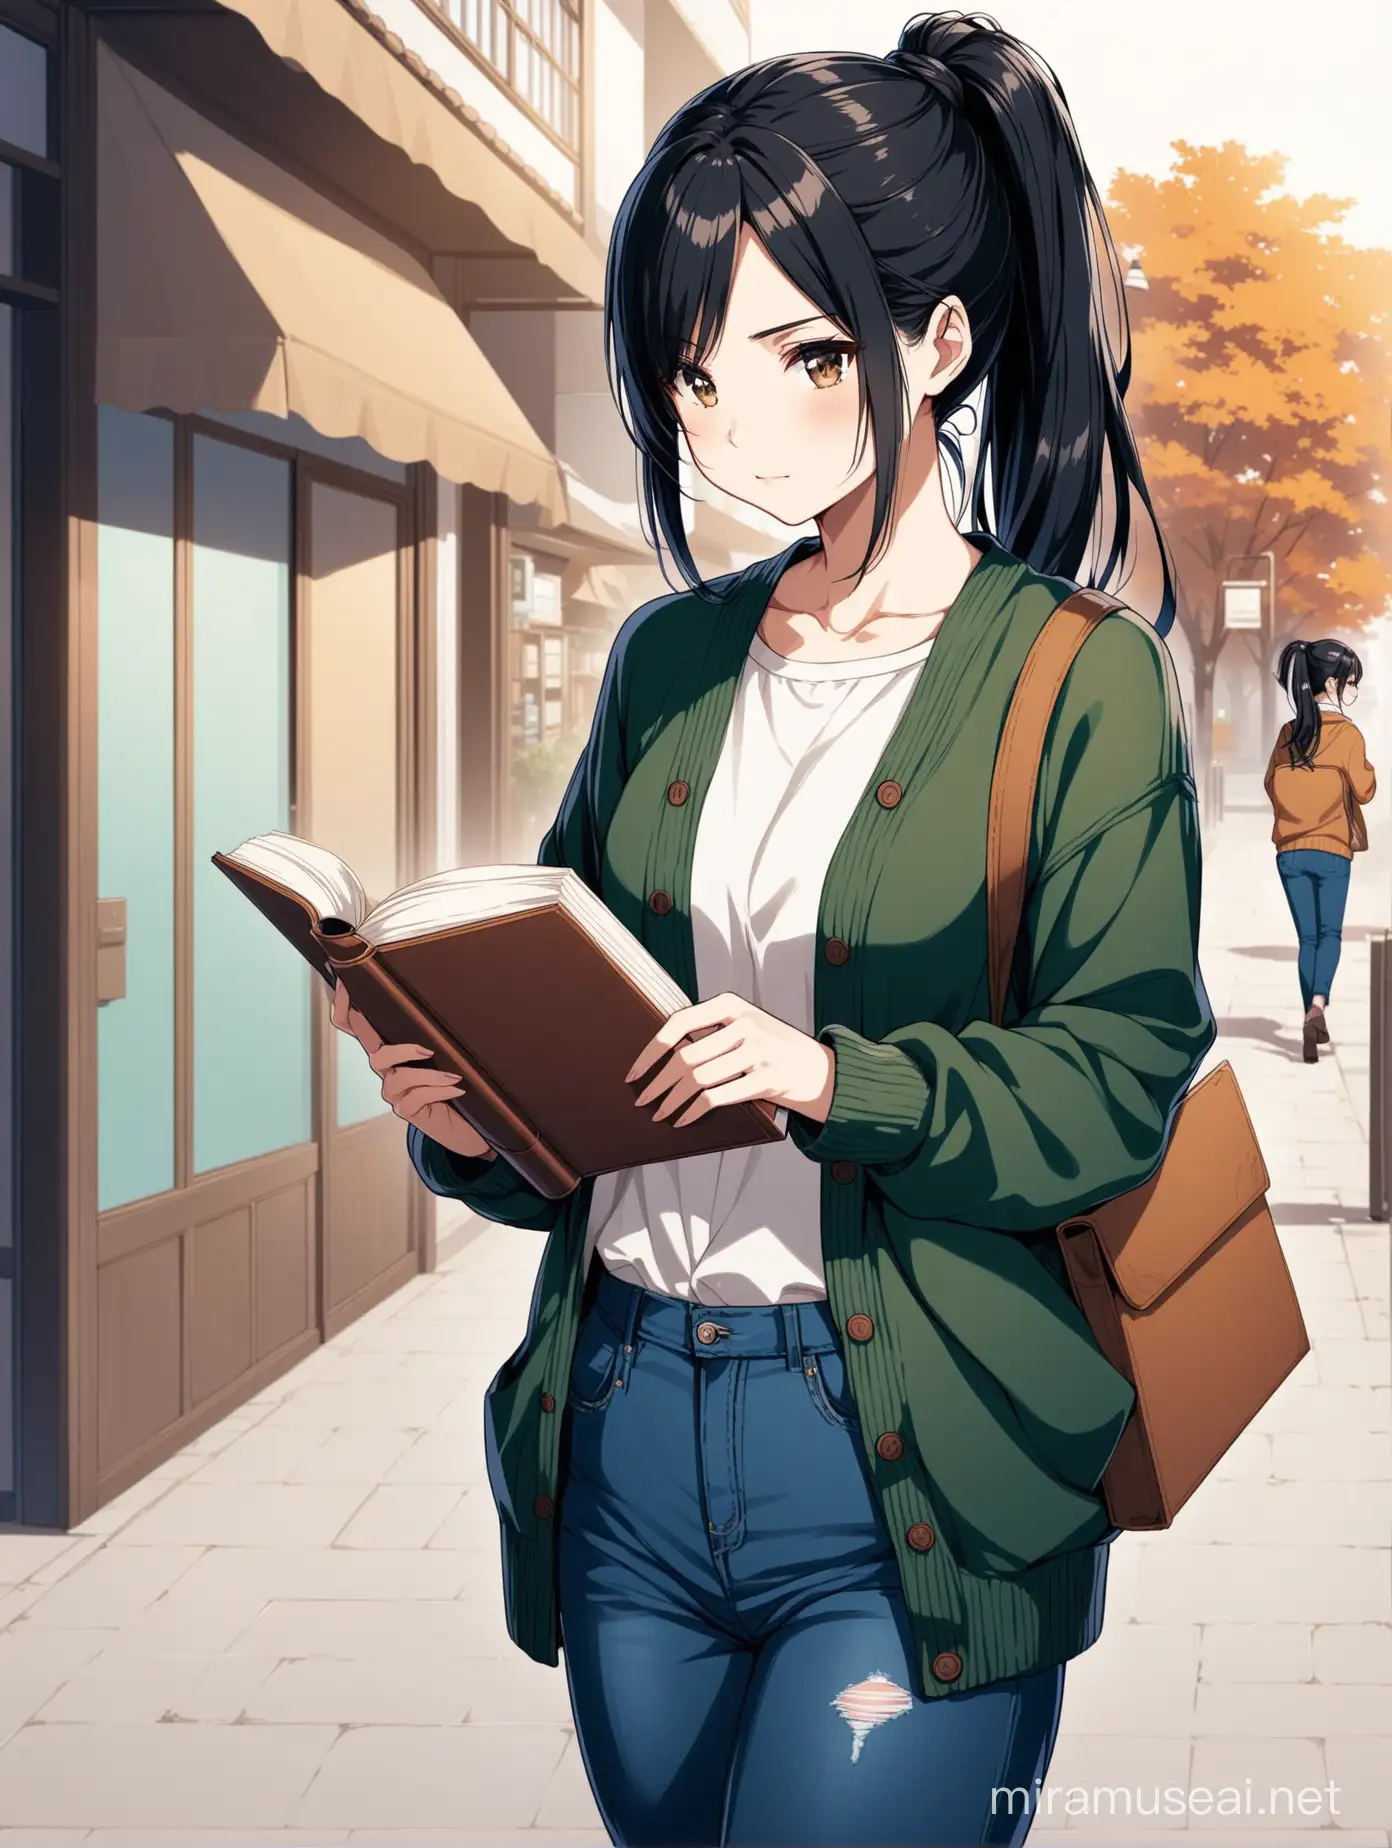 Una mujer estilo anime de cabello negro recogido en una cola, con jeans oscuros y cárdigan, con un libro en la mano y un café en la otra 